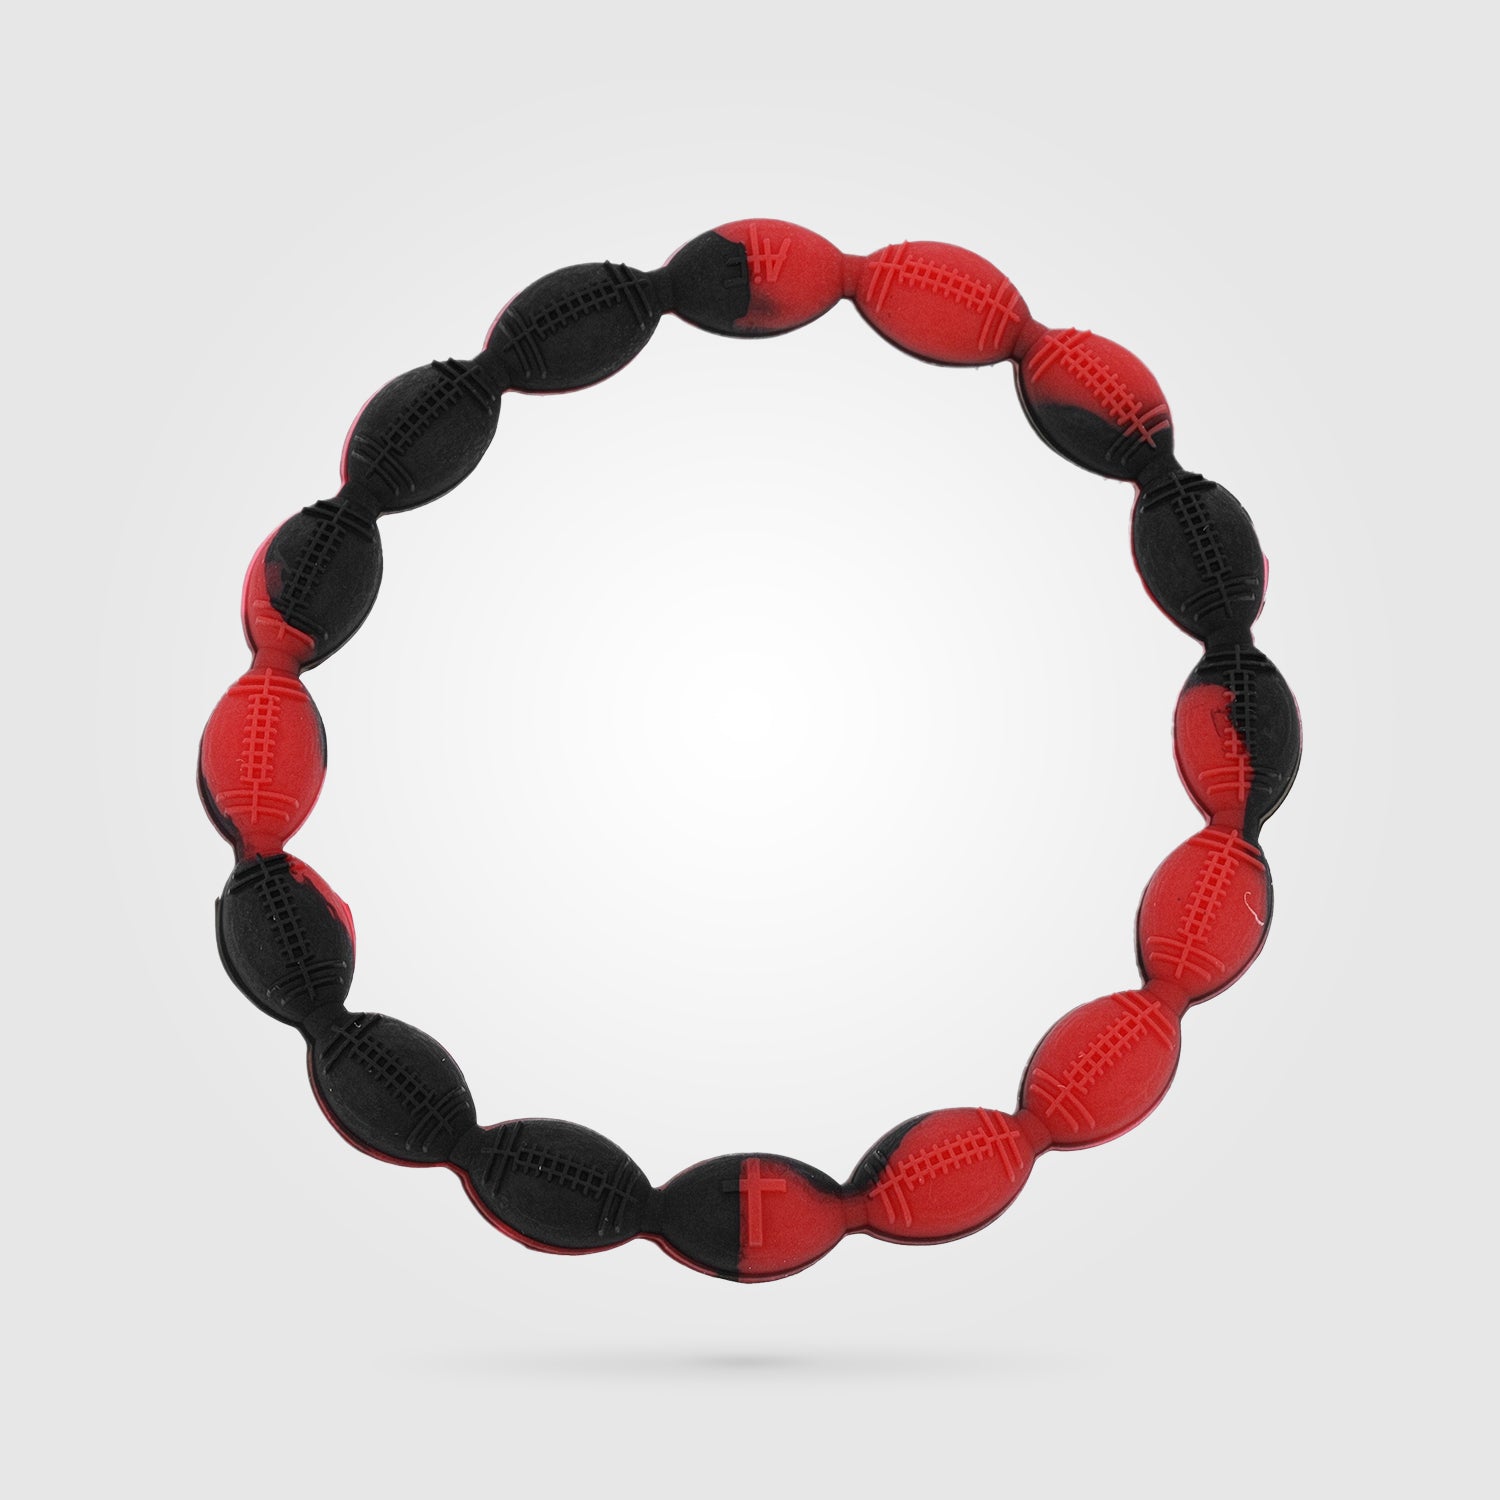 http://www.allinfaith.com/cdn/shop/products/football-power-bracelet-black-red-with-cross-all-in-faith-jewelry_4fcb9526-70ec-4e4a-a2d8-9a786462ac22.jpg?v=1552494854